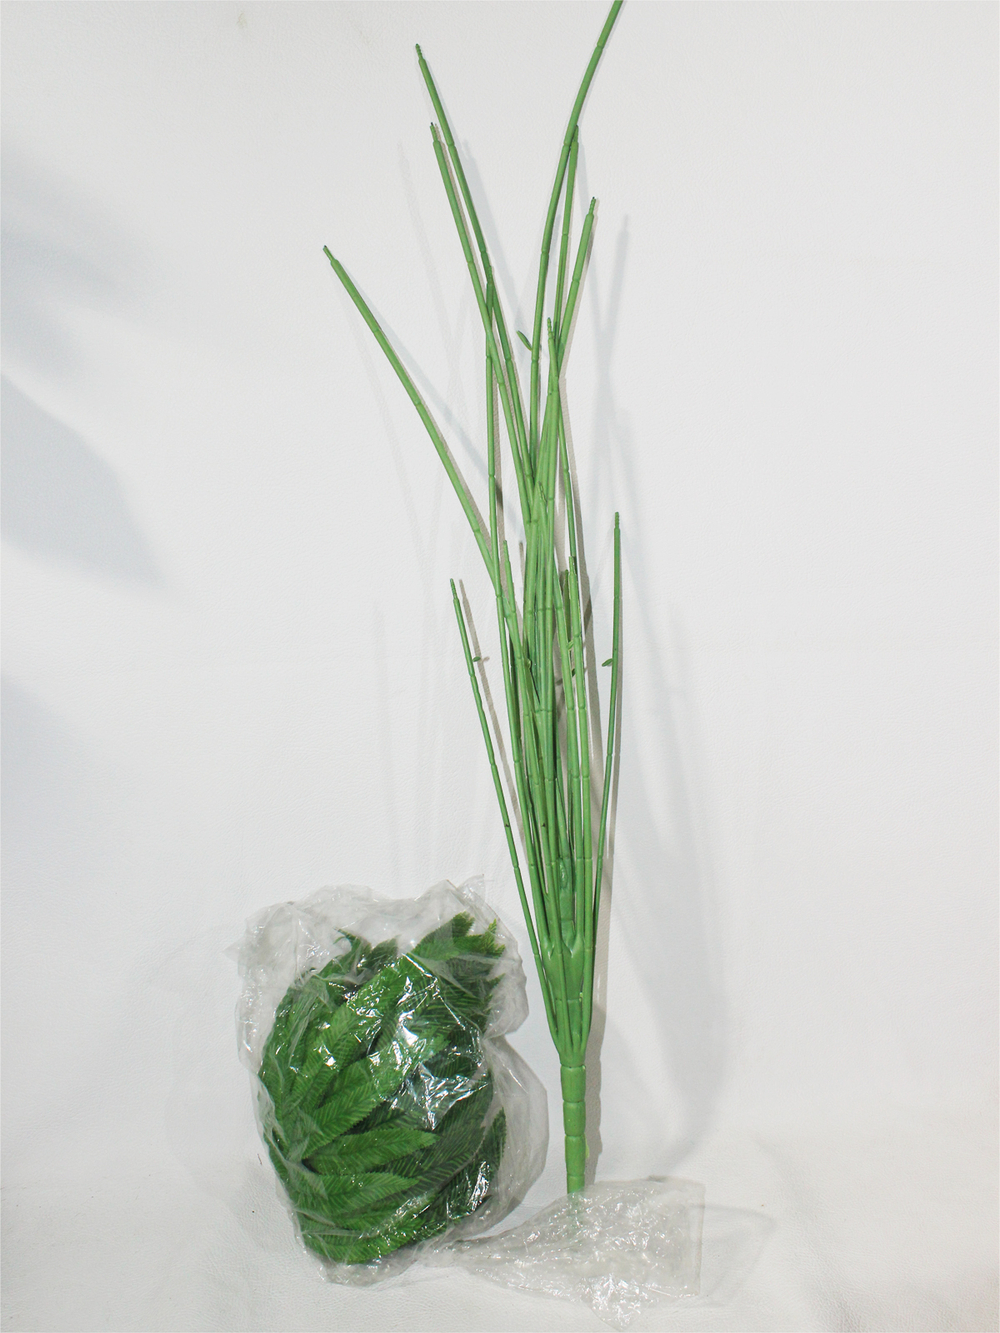 Искусственное растение Папоротник Птерис зеленый 100см